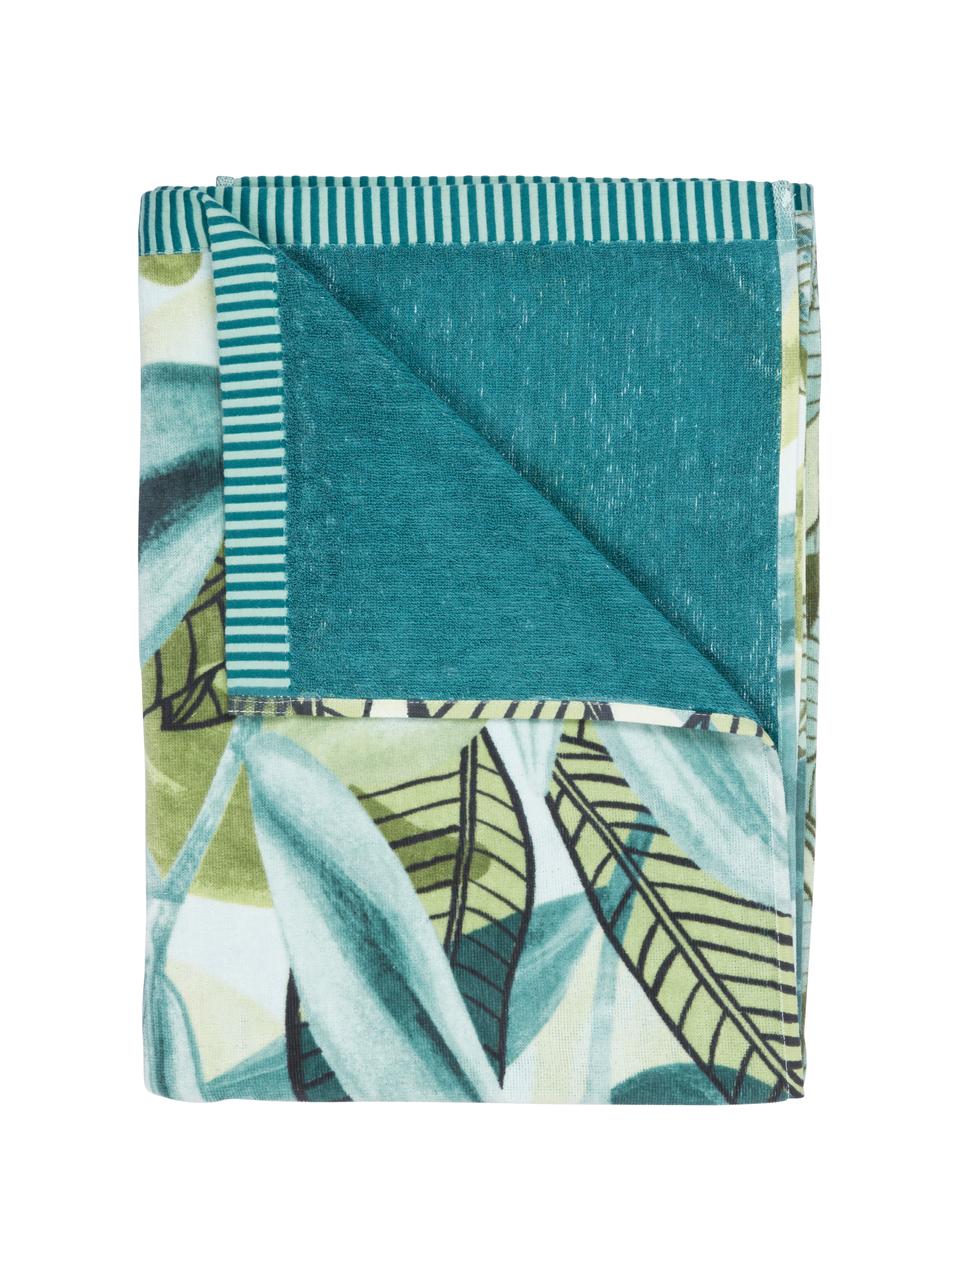 Plážová osuška z organické bavlny se vzorem listů Jungle Vibe, Modrá a odstíny zelené, Š 100 cm, D 180 cm